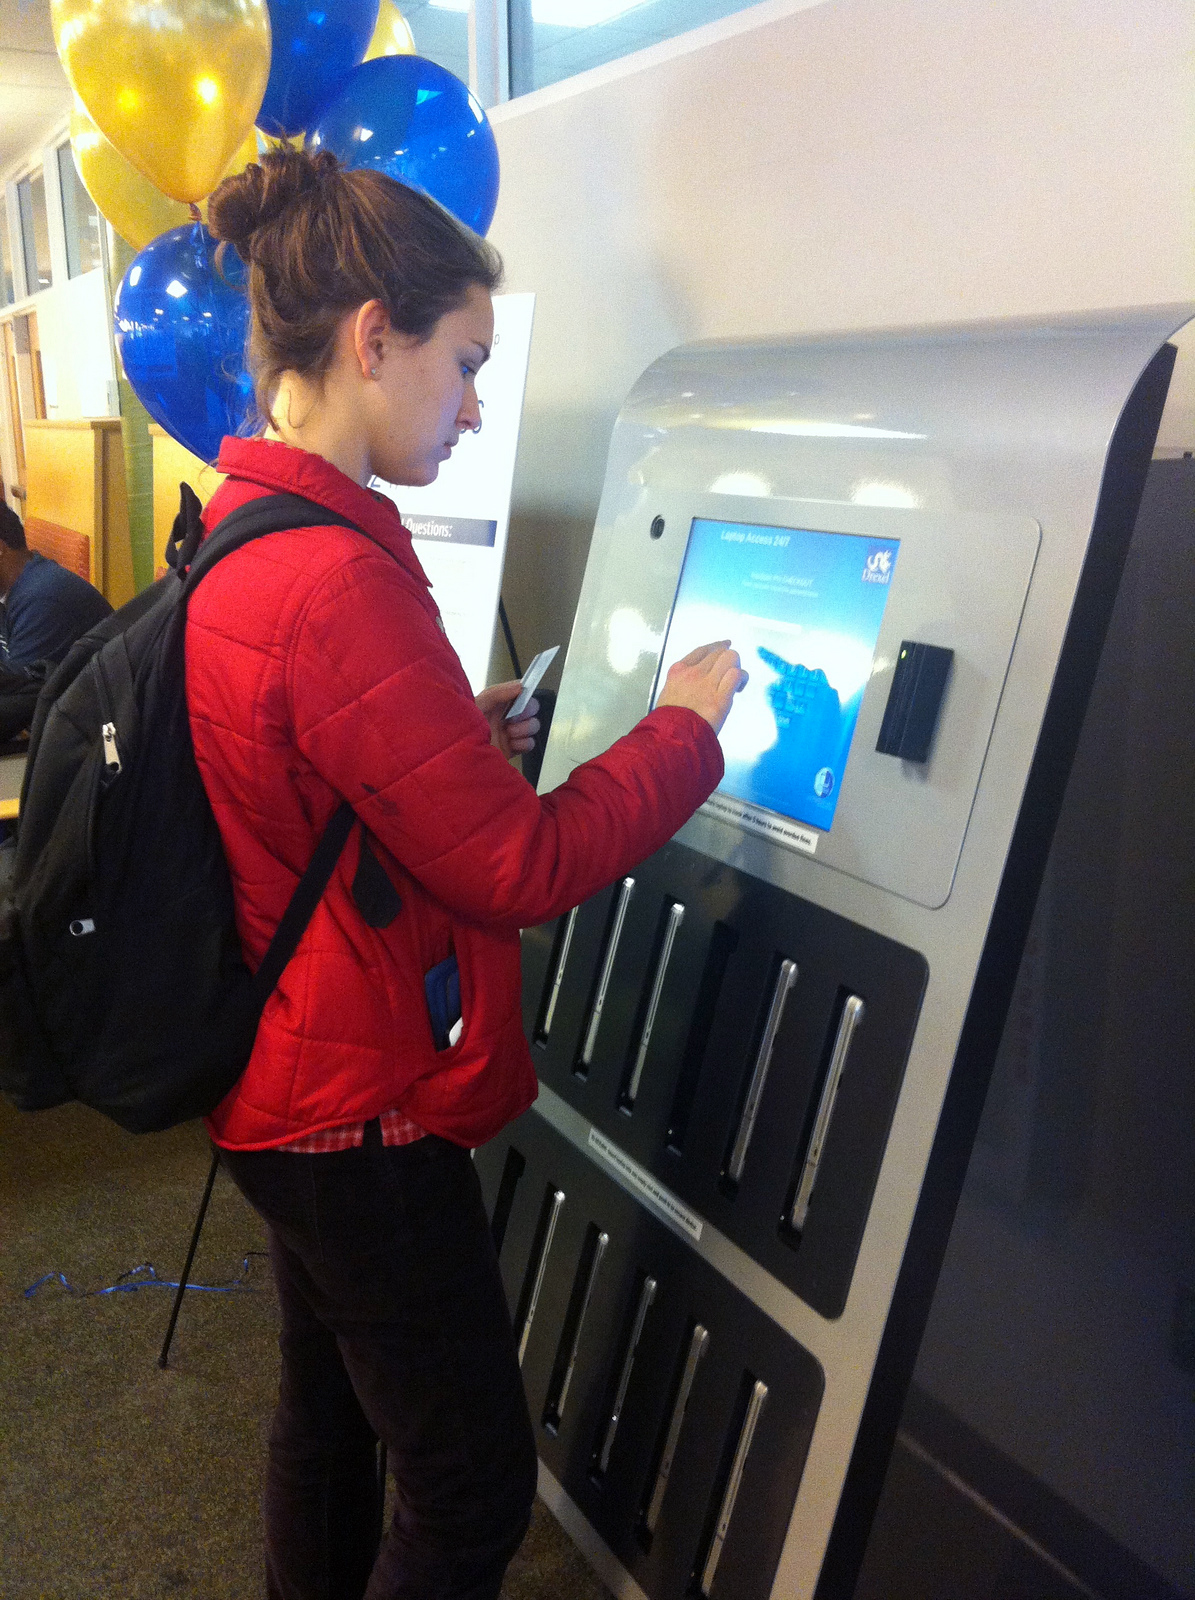 ↪ Ameerika ülikoolid paigaldavad MacBookide rentimiseks sularahaautomaate